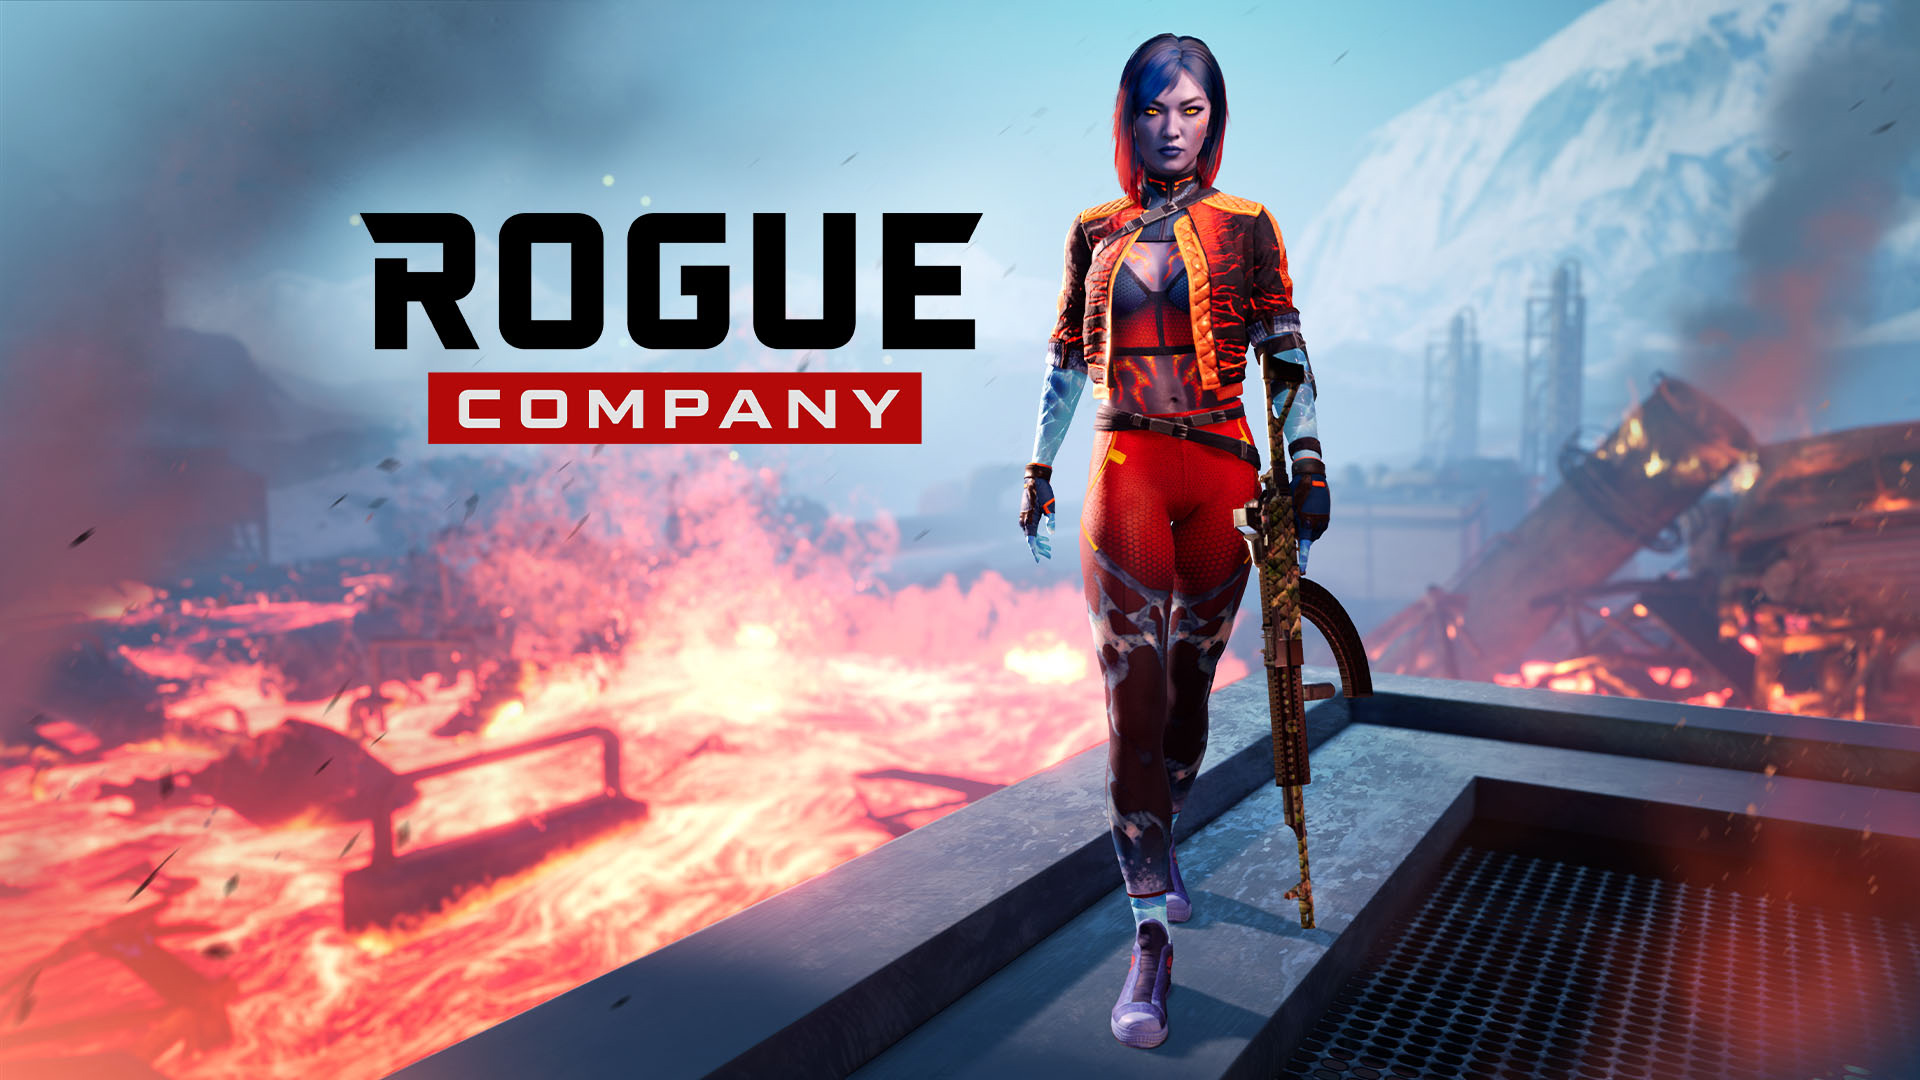 Rogue Company Review (Switch eShop)